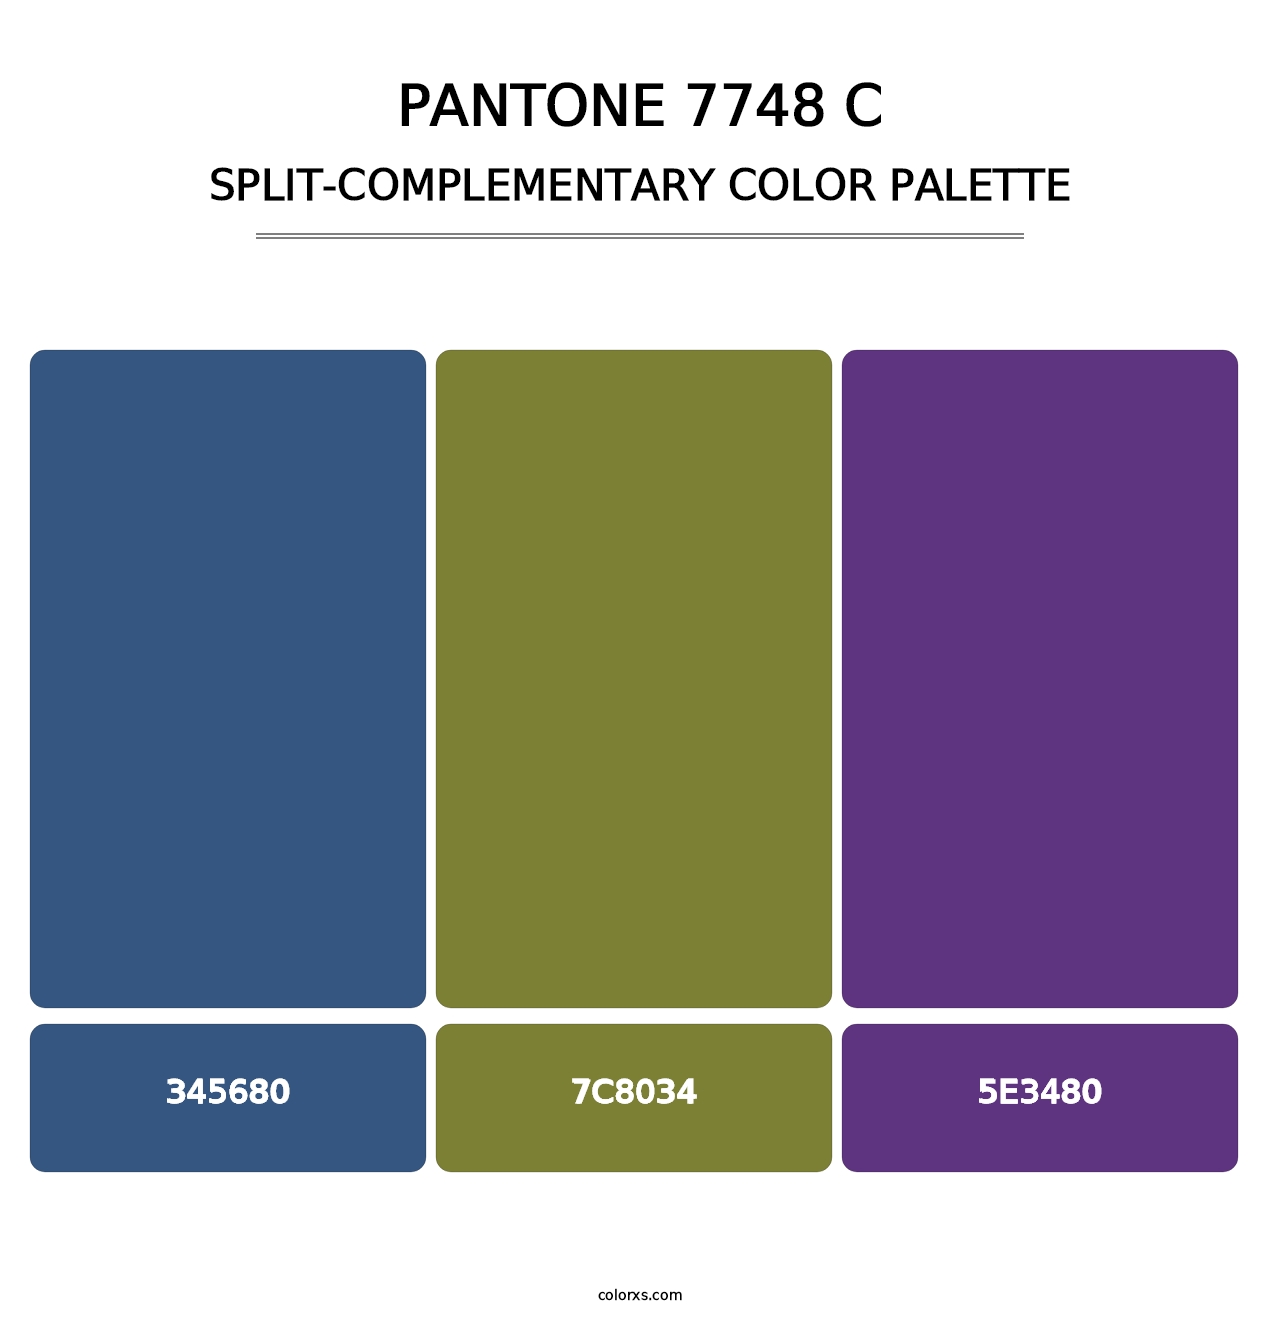 PANTONE 7748 C - Split-Complementary Color Palette